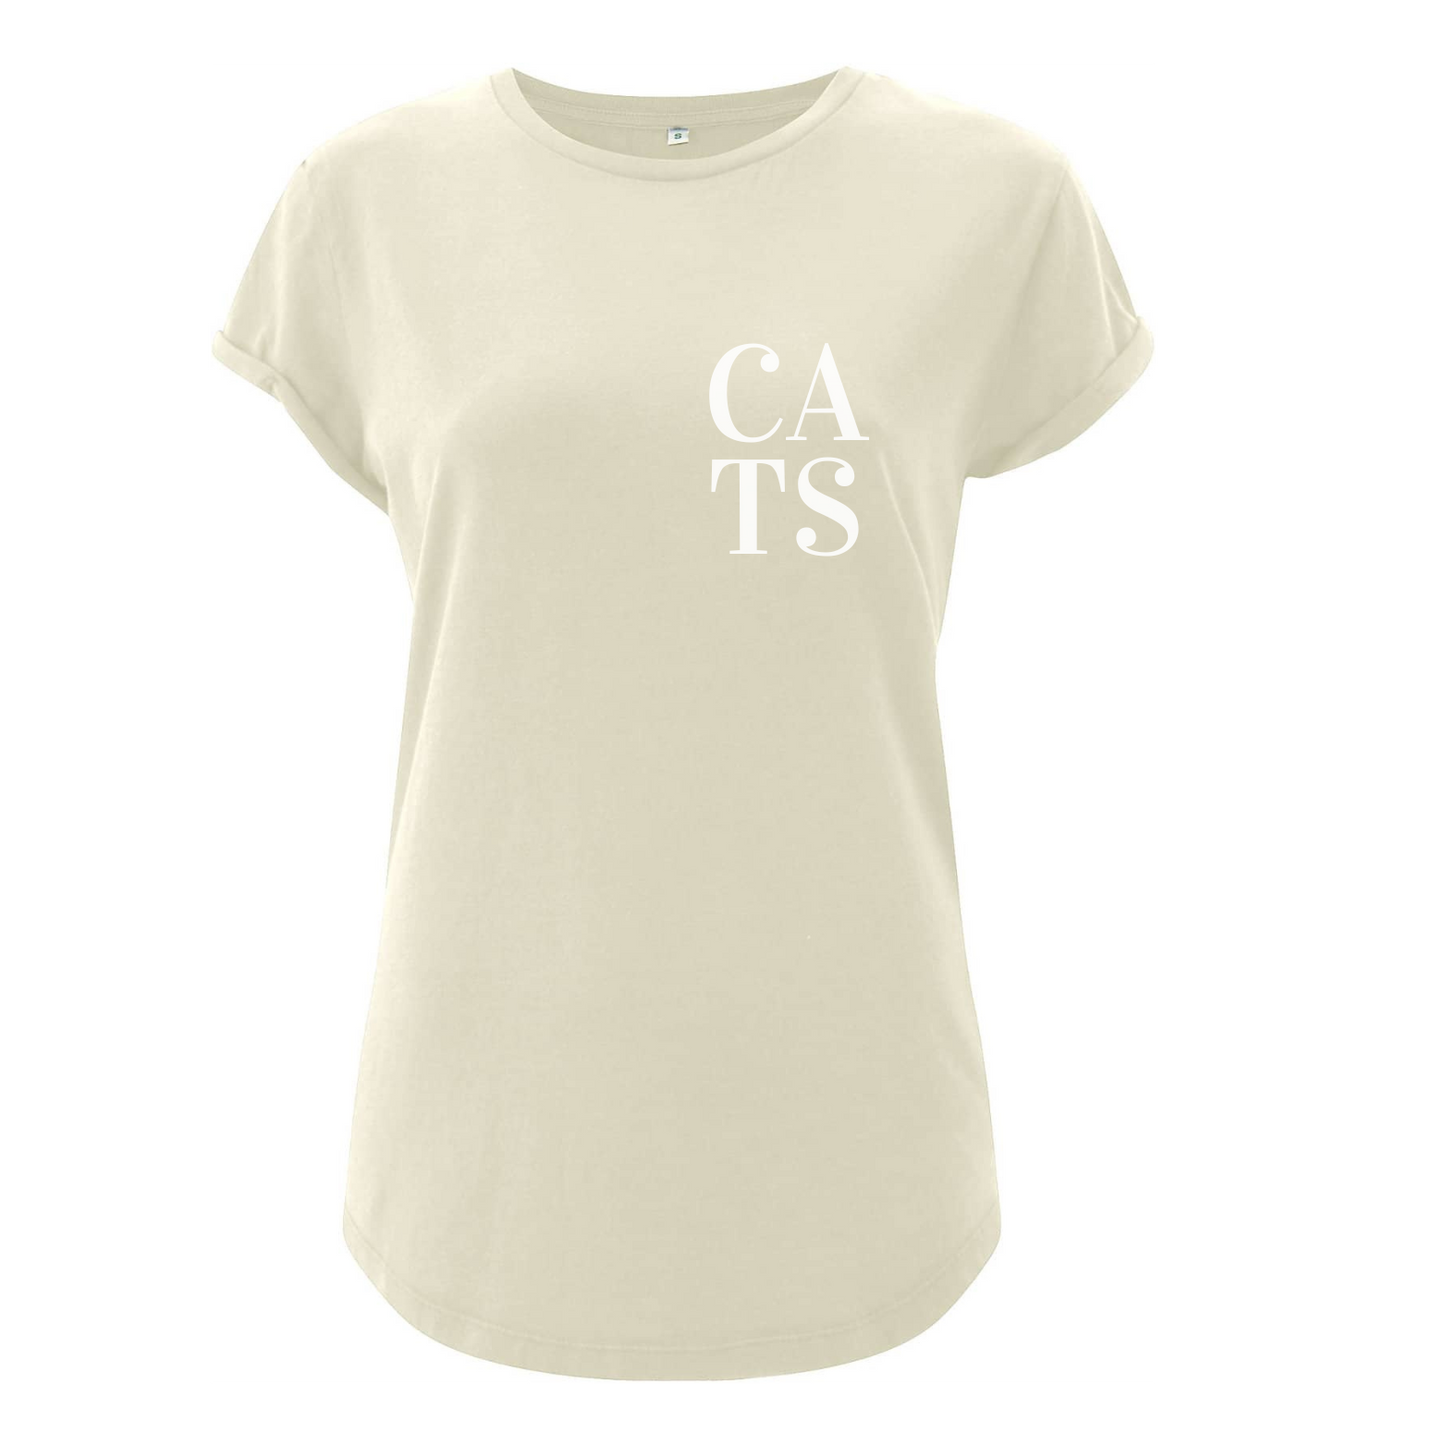 T-Shirt "CATS"